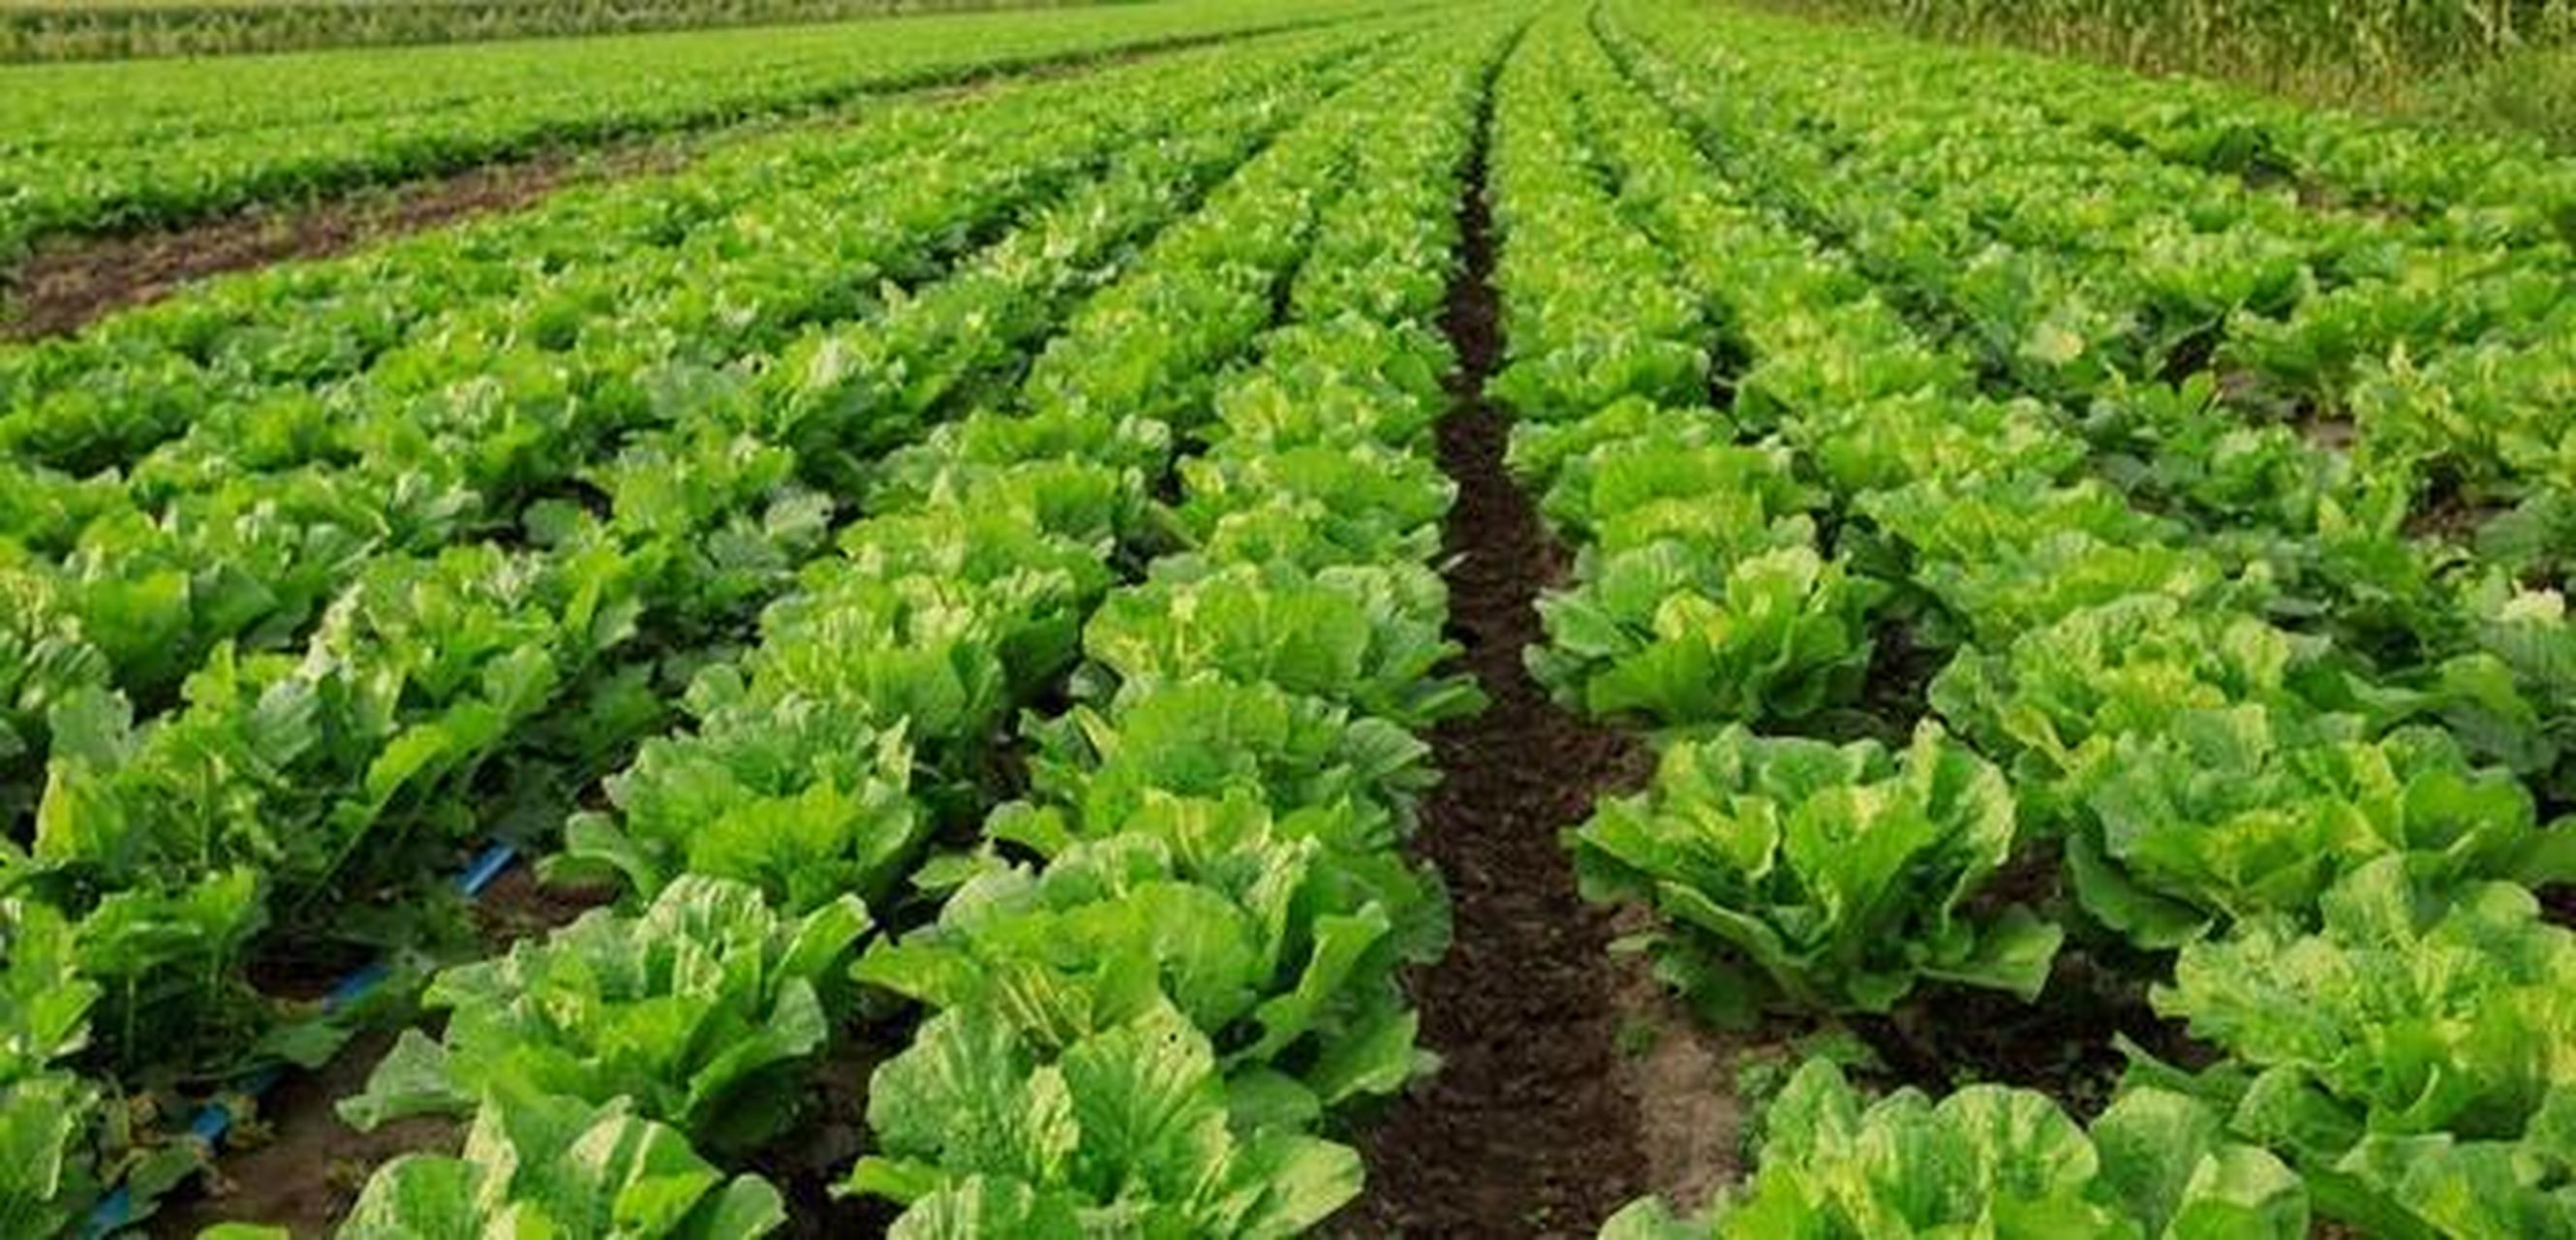 停止进口亿吨转基因大豆,就要7亿亩耕地来种植,大白菜怎么不?